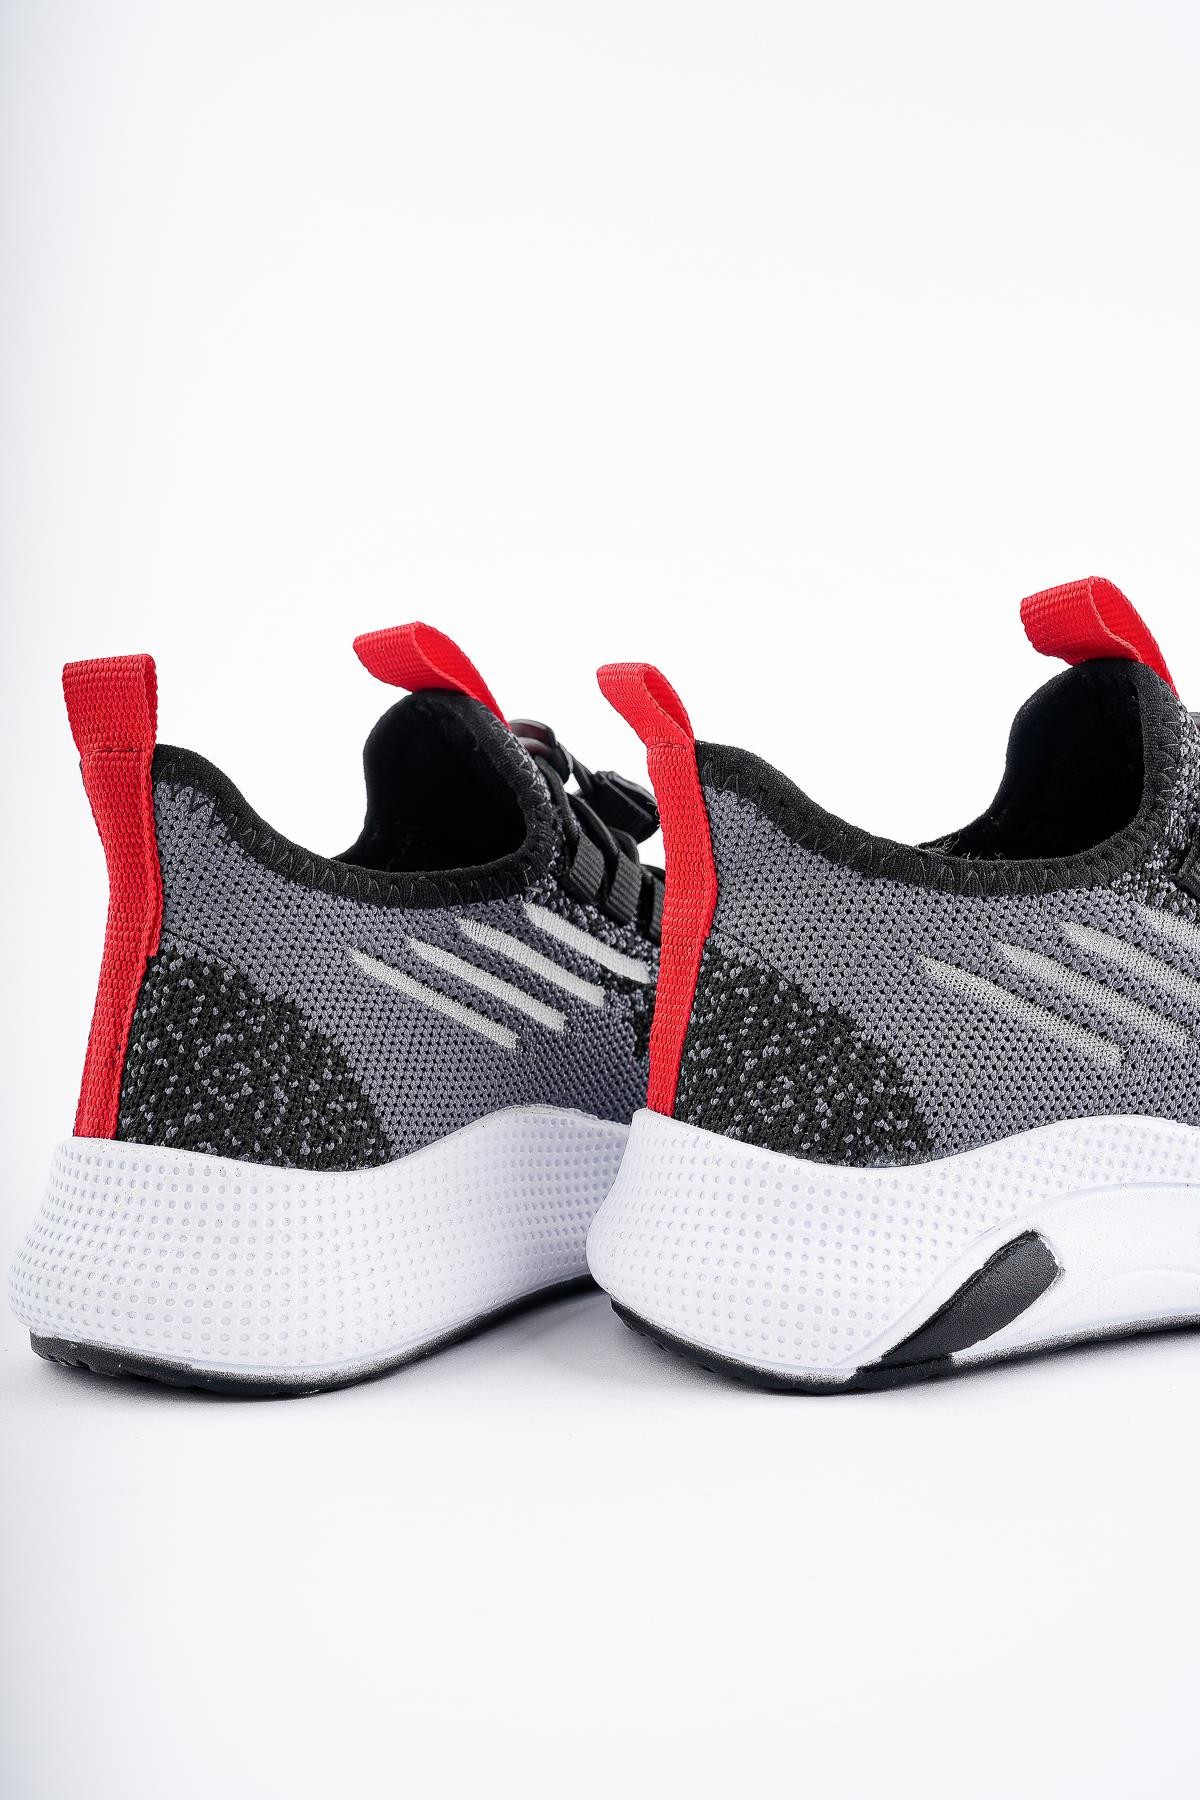 Muggo JETSON Günlük Unisex Çocuk Garantili Bağcıklı Rahat Sneaker Spor Ayakkabı